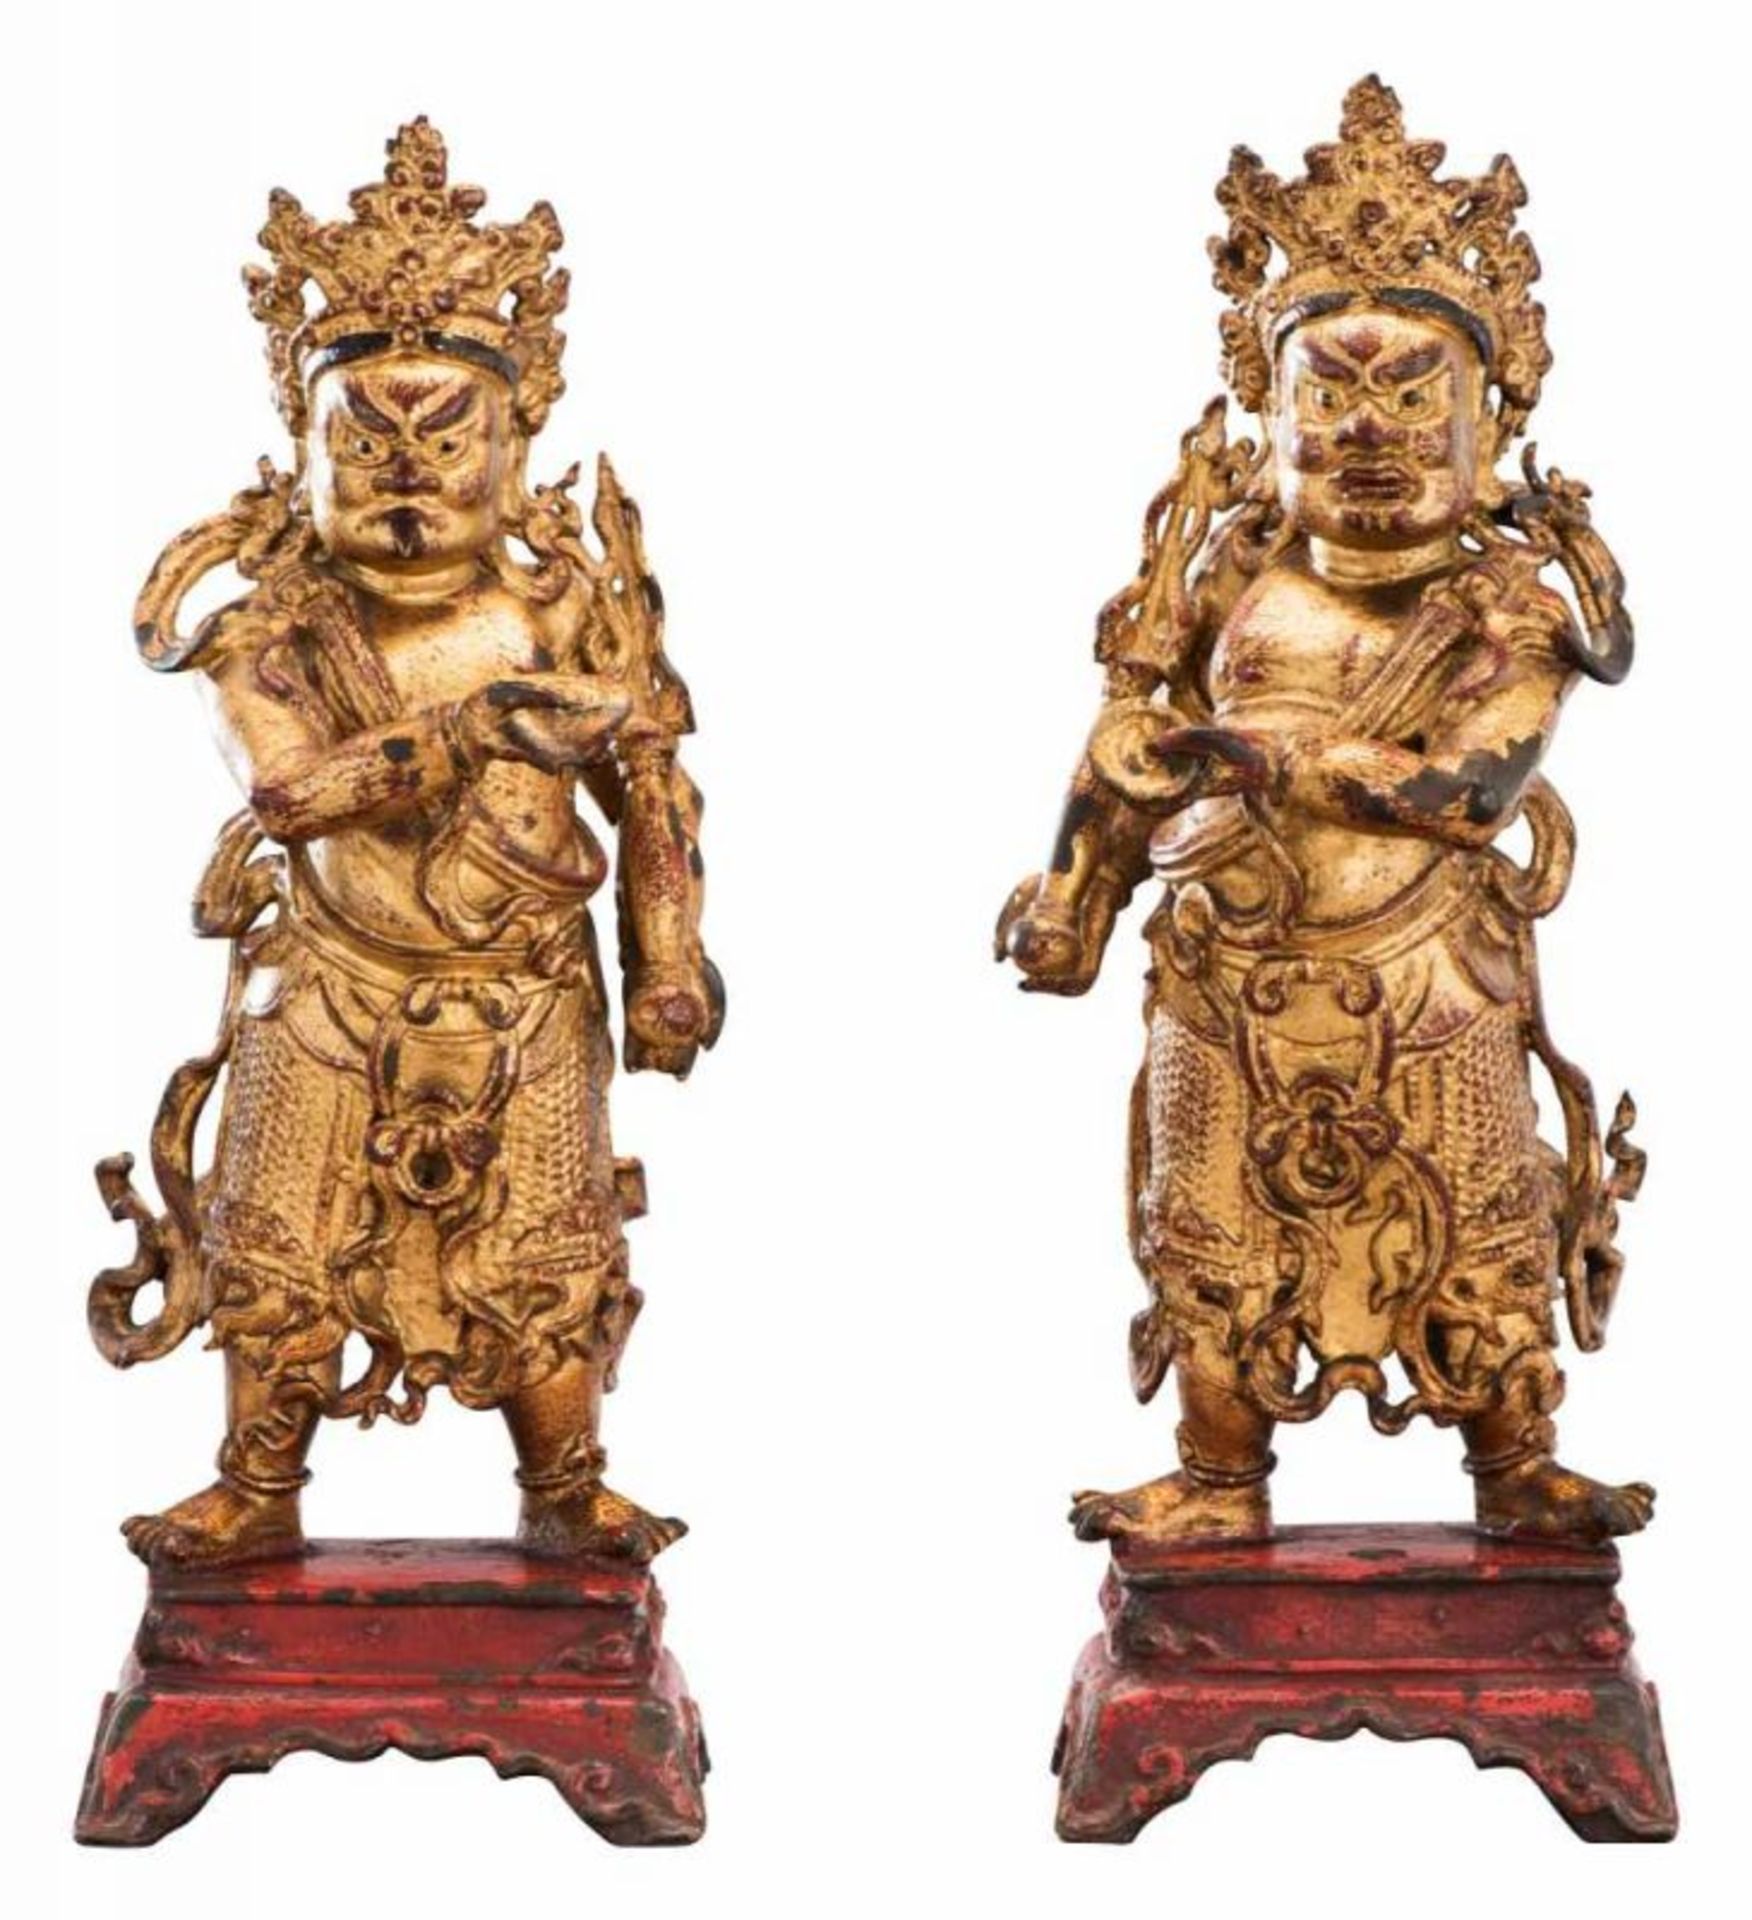 Paar buddhistische Wächterfiguren China 18. Jh. Bronze, lackvergoldet. Breitbeinig und in Rüstung